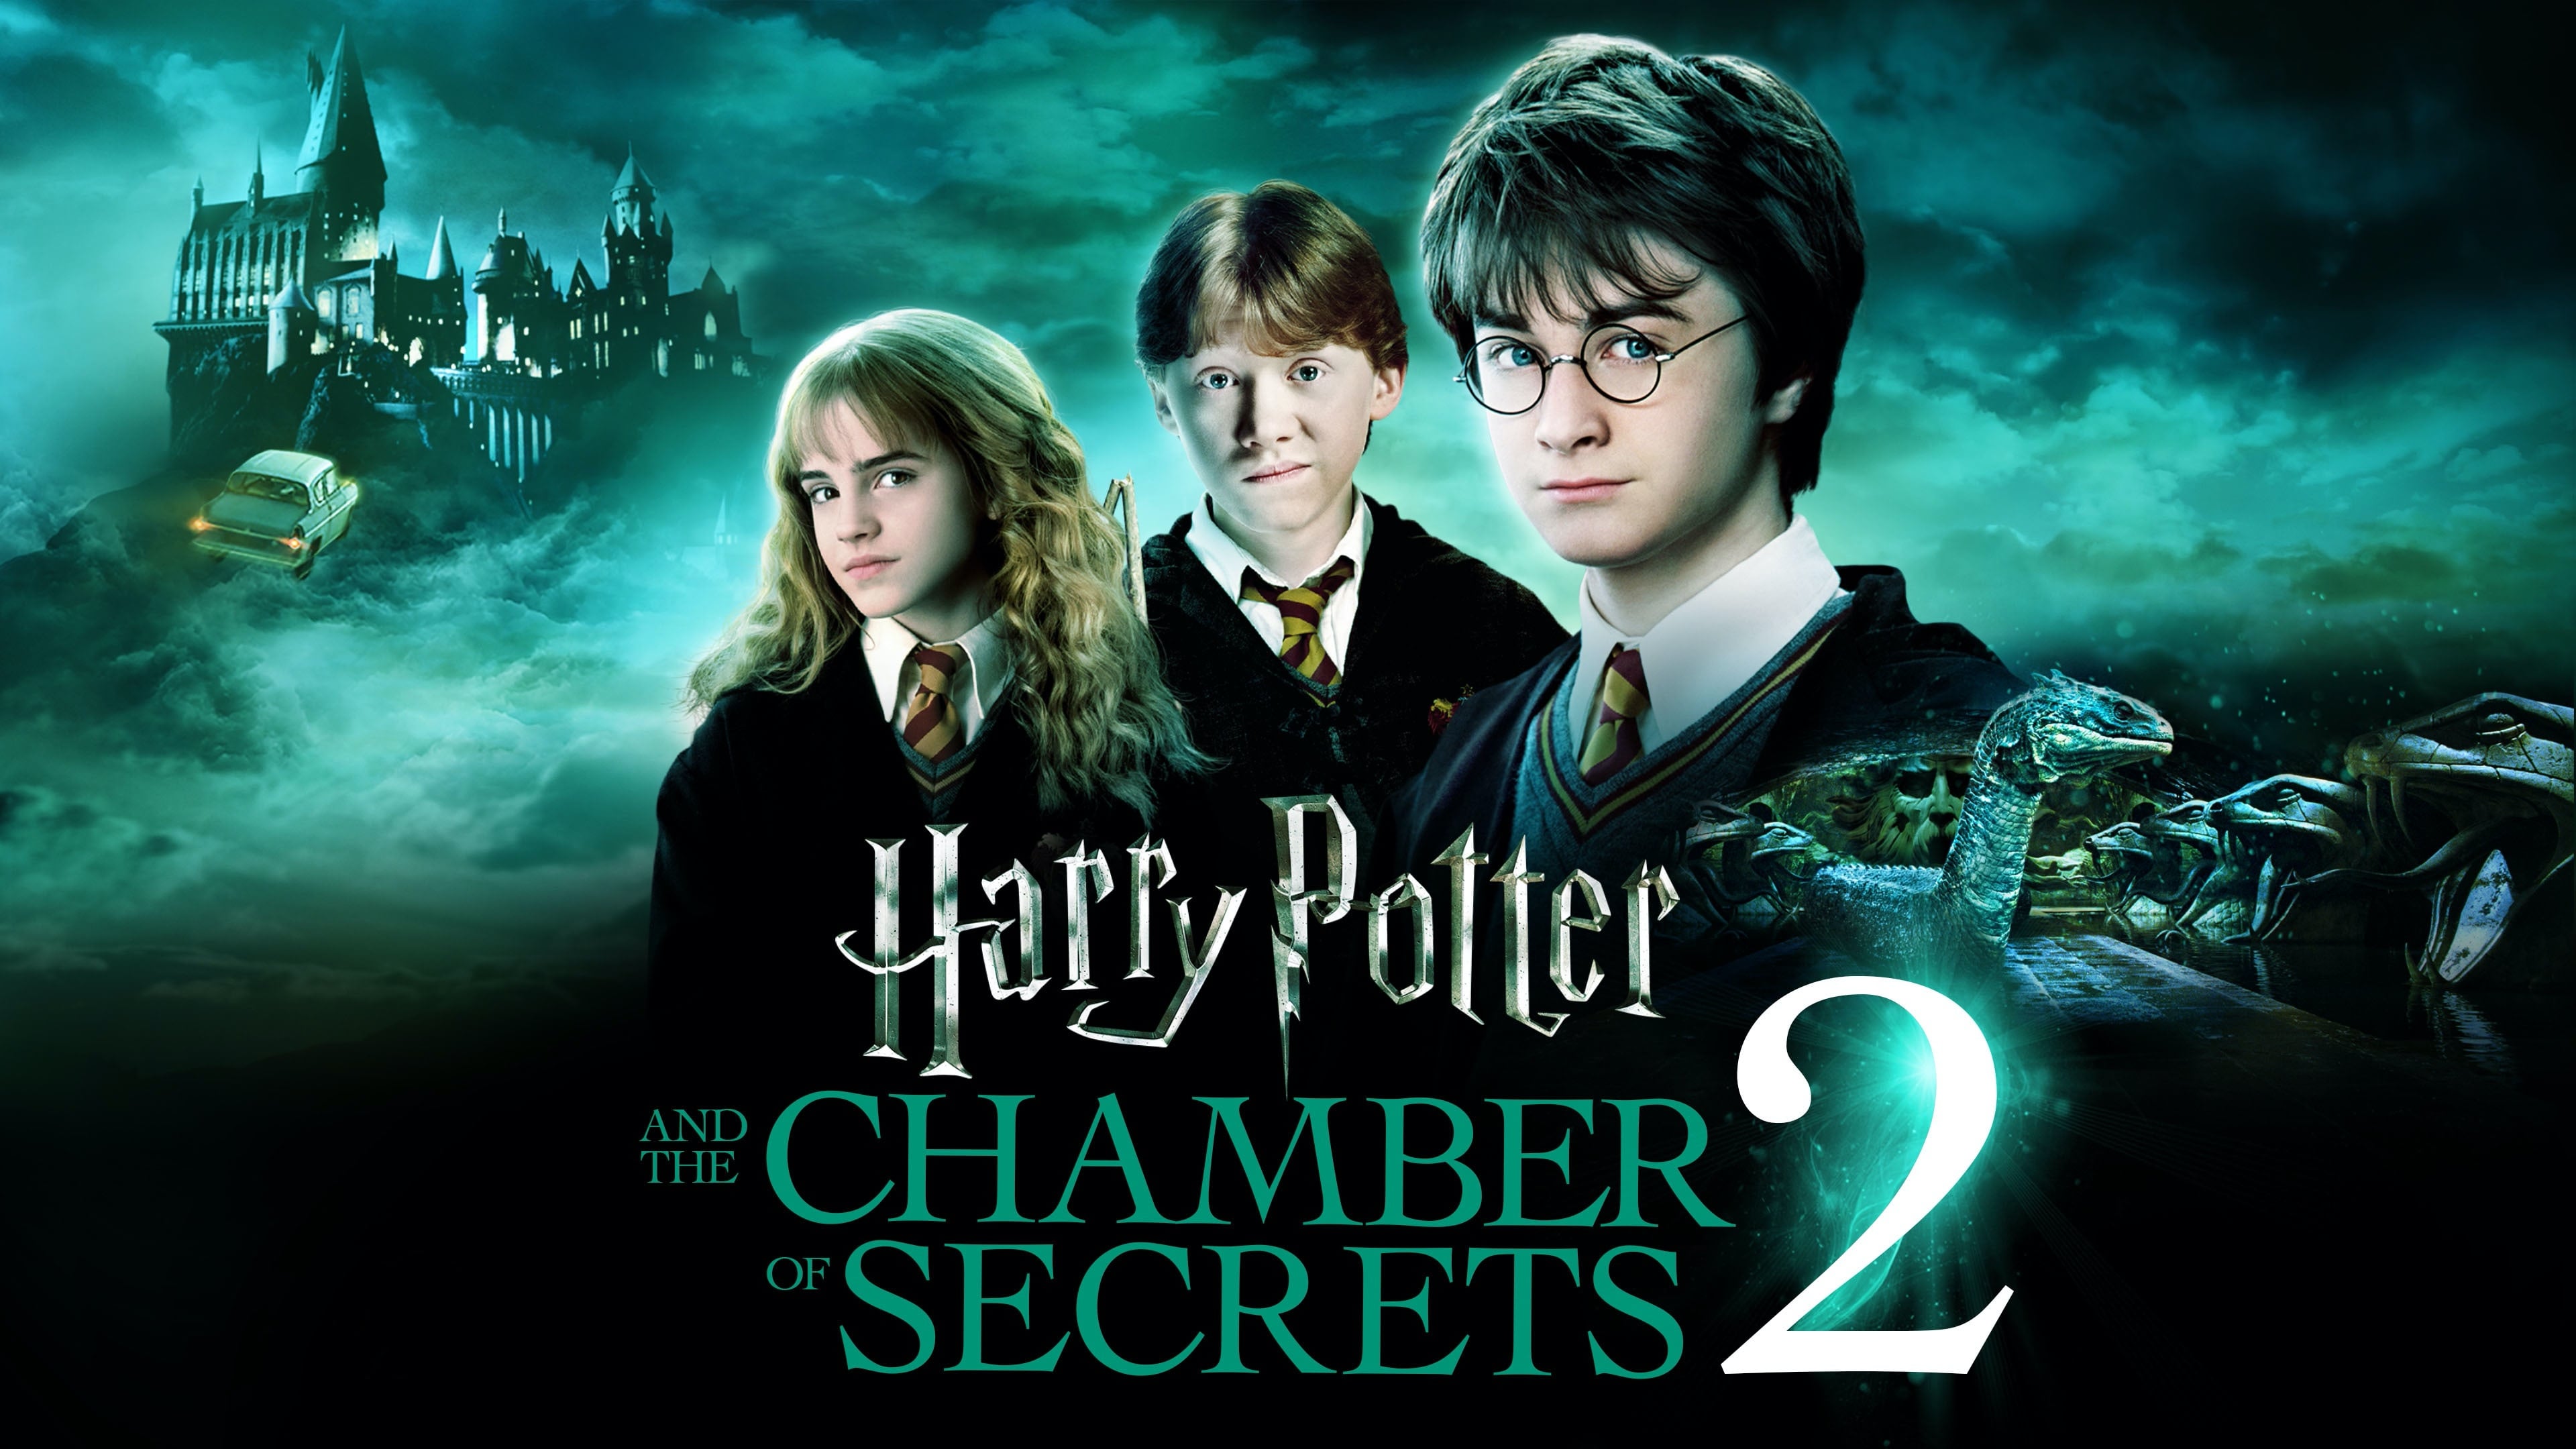 Хари Потер и дворана тајни (2002)